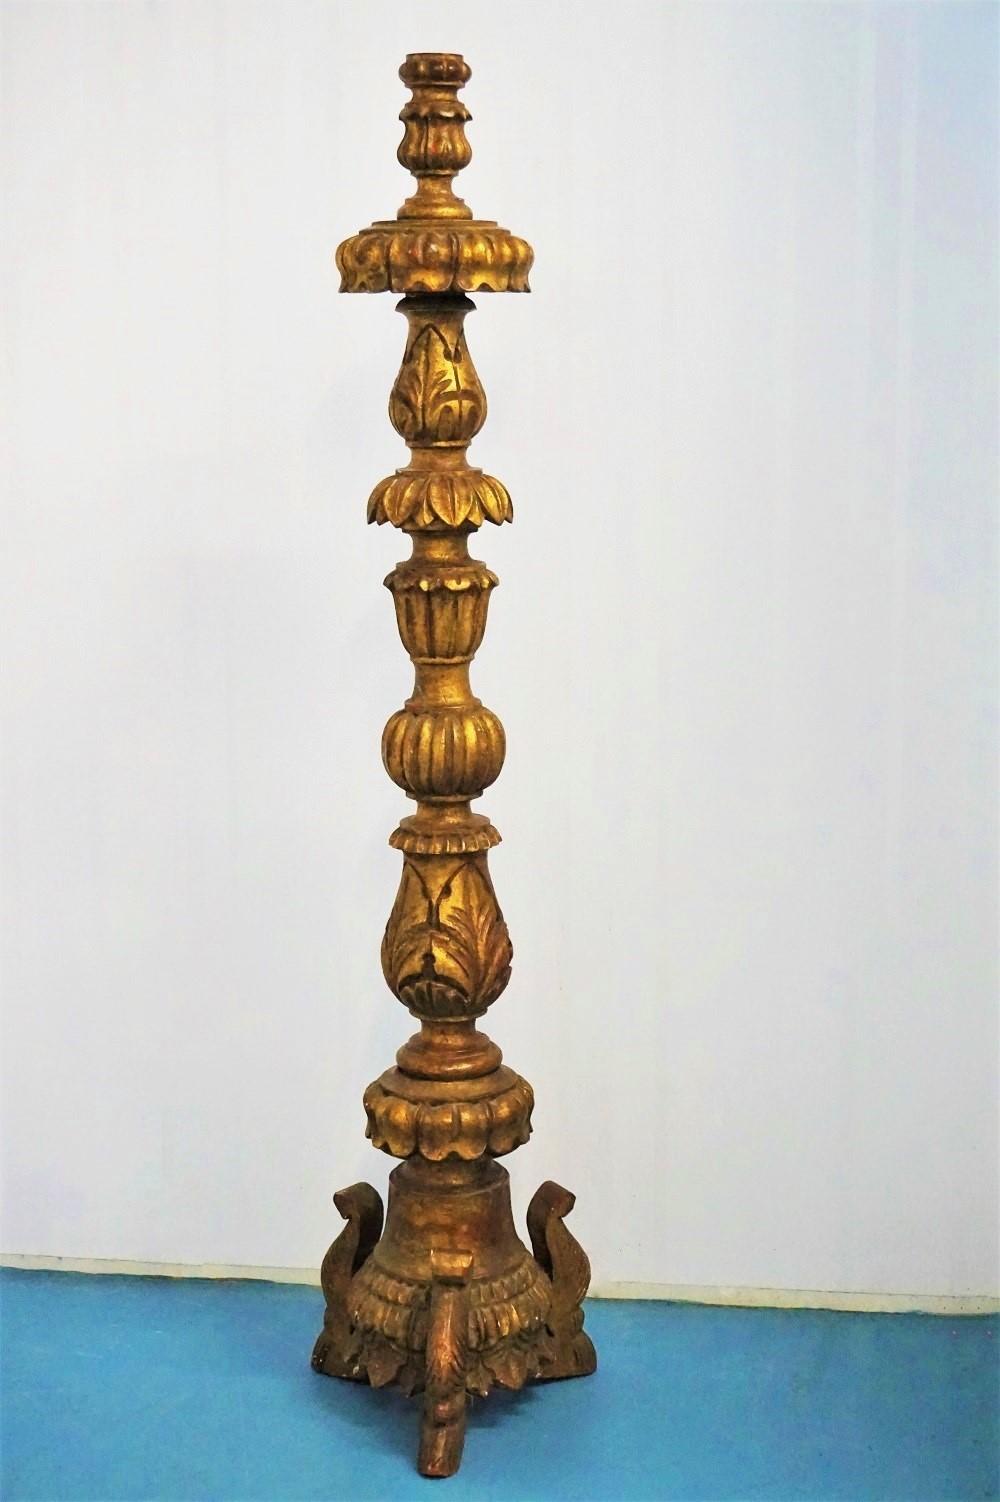 Hohe portugiesische Kirchenfackel aus vergoldeter Eiche aus dem frühen 18. Jahrhundert mit tiefen Blattschnitzereien auf einem Dreibeinfuß.
Diese Fackel kann leicht in eine Stehleuchte umgewandelt werden.
Maße: Höhe 54